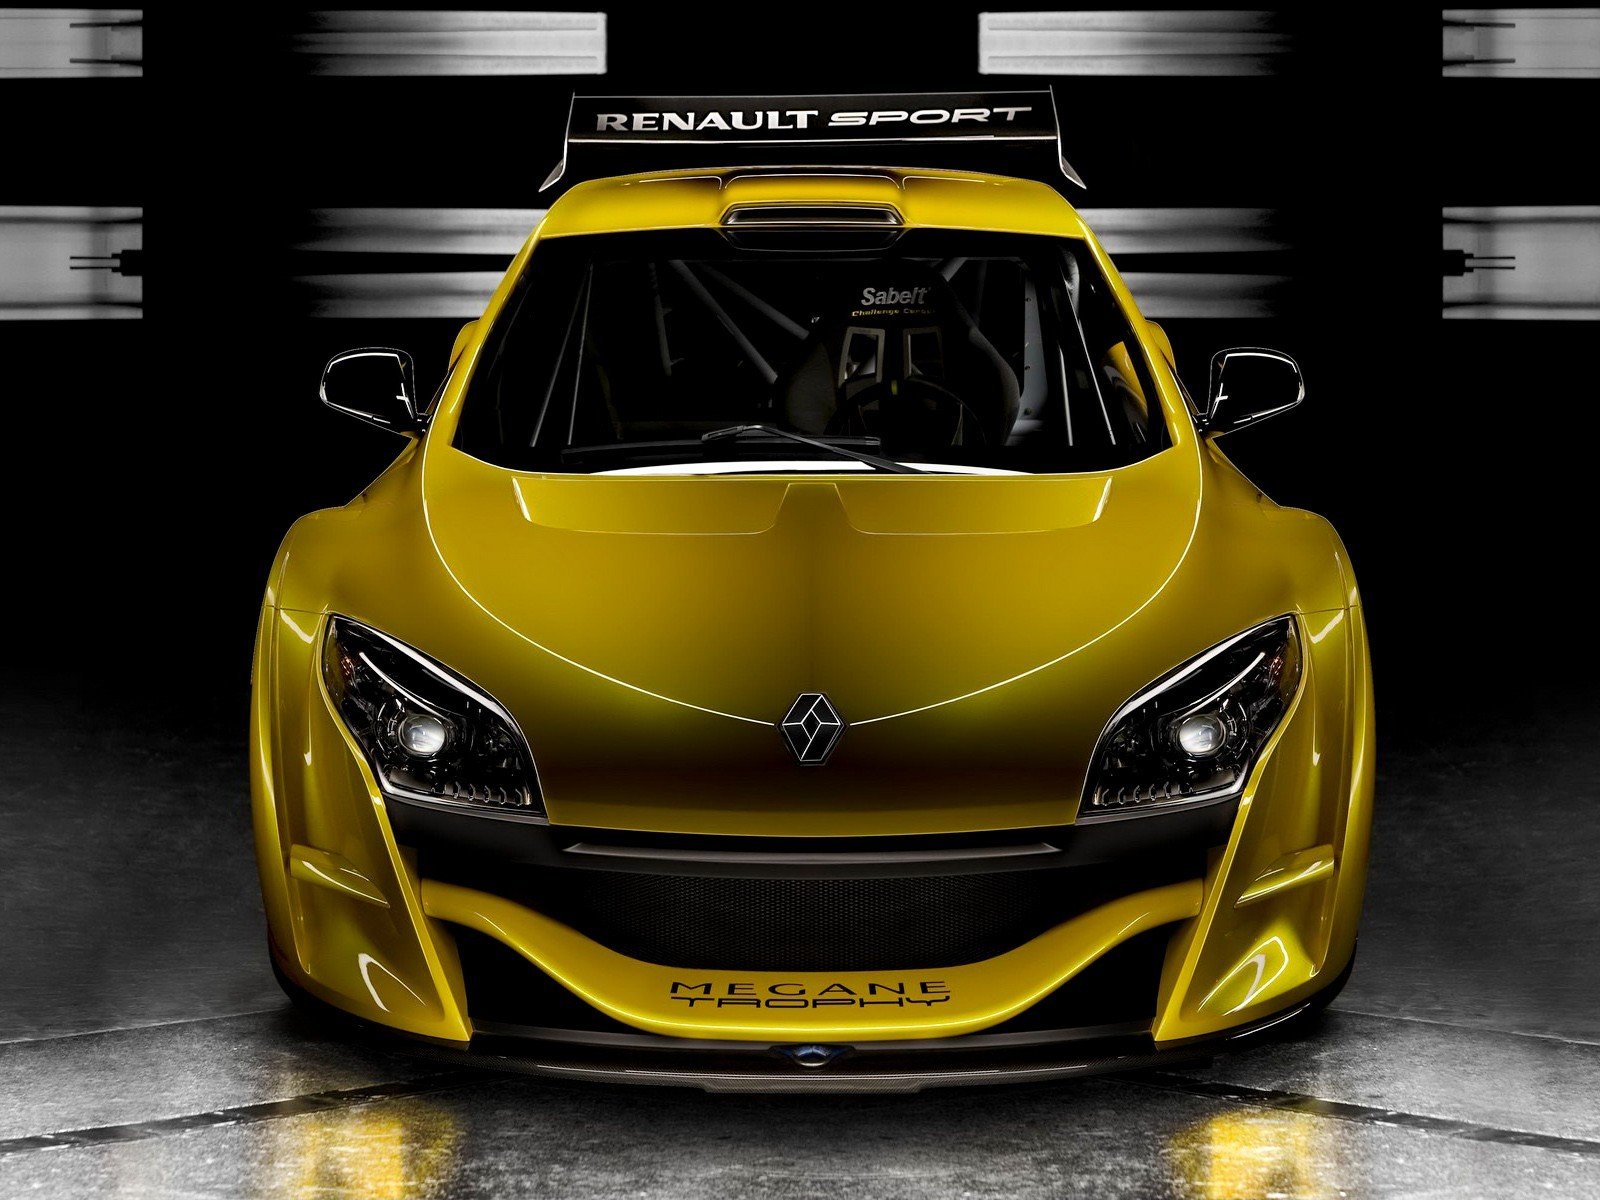 cars, Supercars, Renault Wallpaper